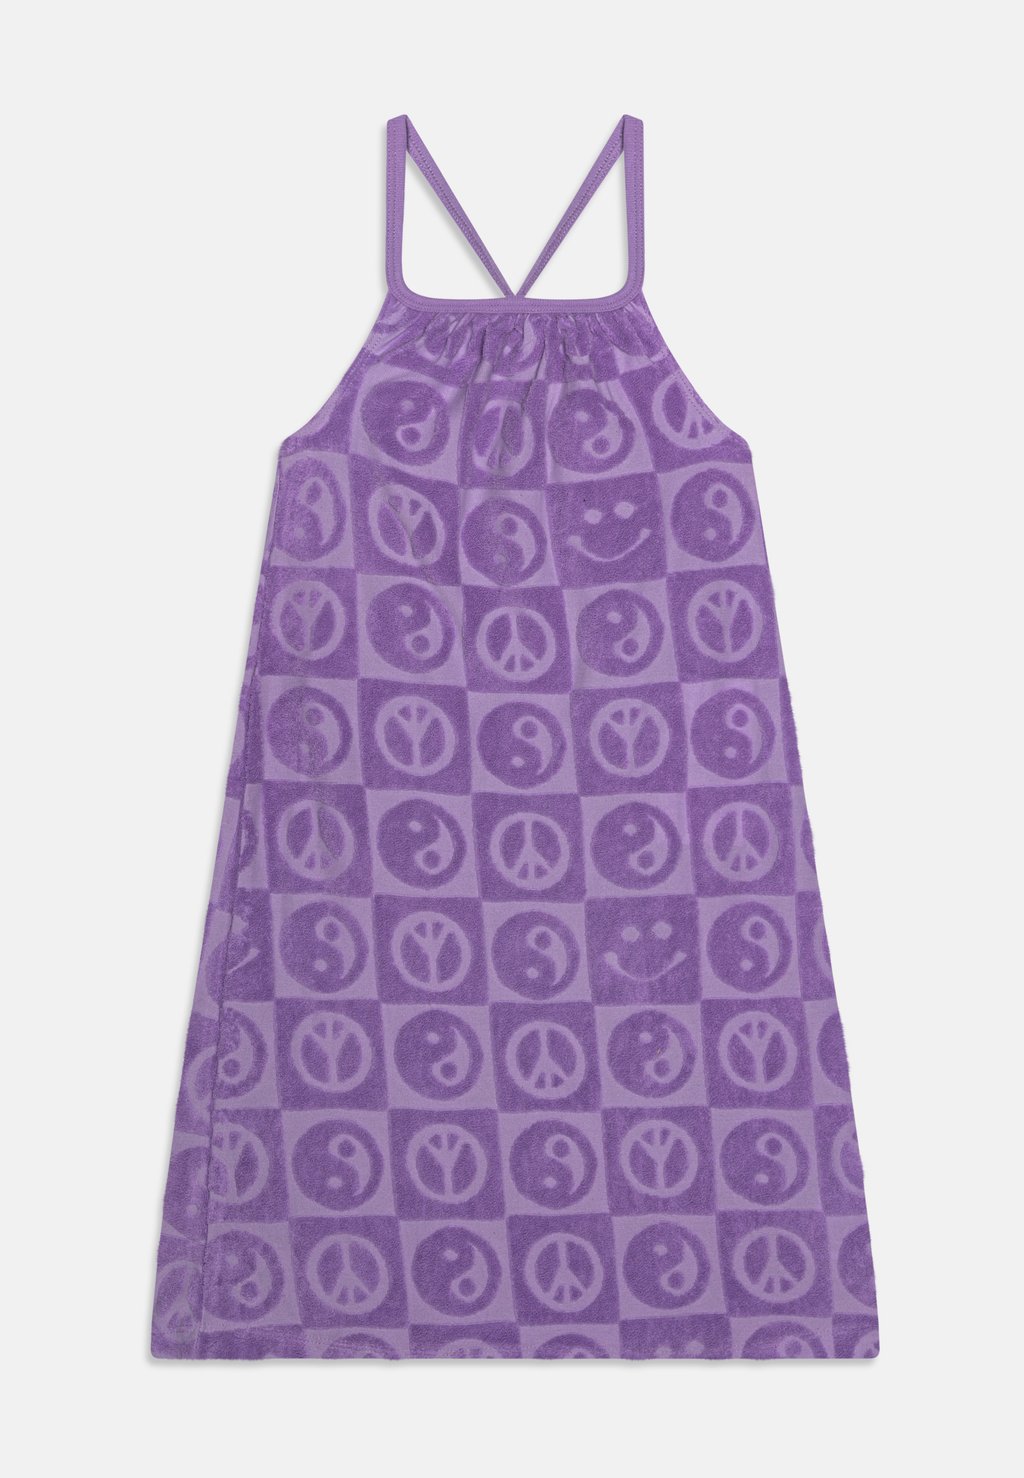 Платье из джерси Charming Dress Molo, цвет viola